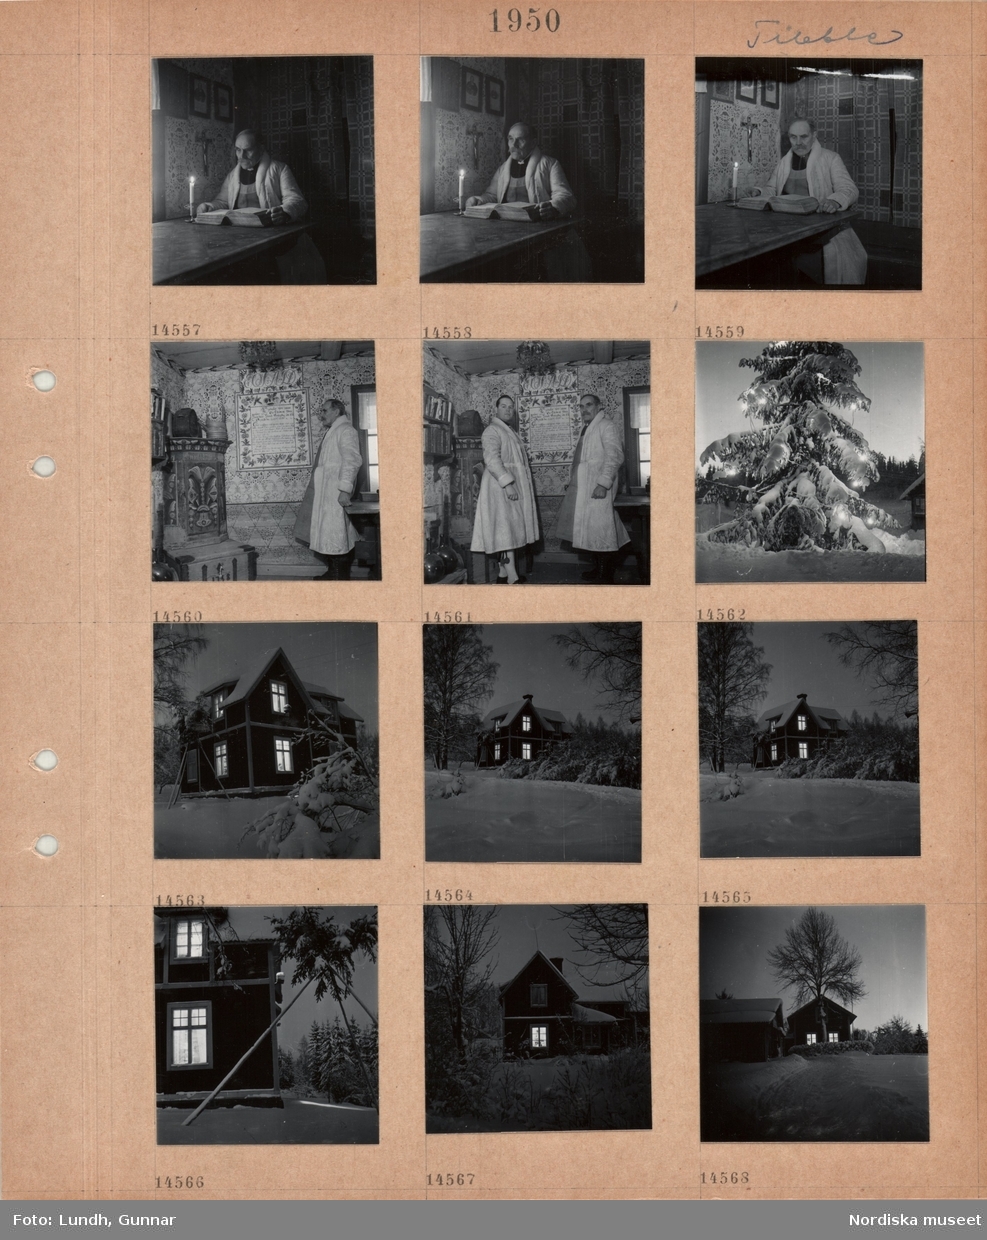 Motiv: Tibble (Dalarna) ;
Interiör med två män klädda i folkdräkt Knis Karl och hans fader, nattbild med en julgran klädd i julgransbelysning, exteriör av ett hus.